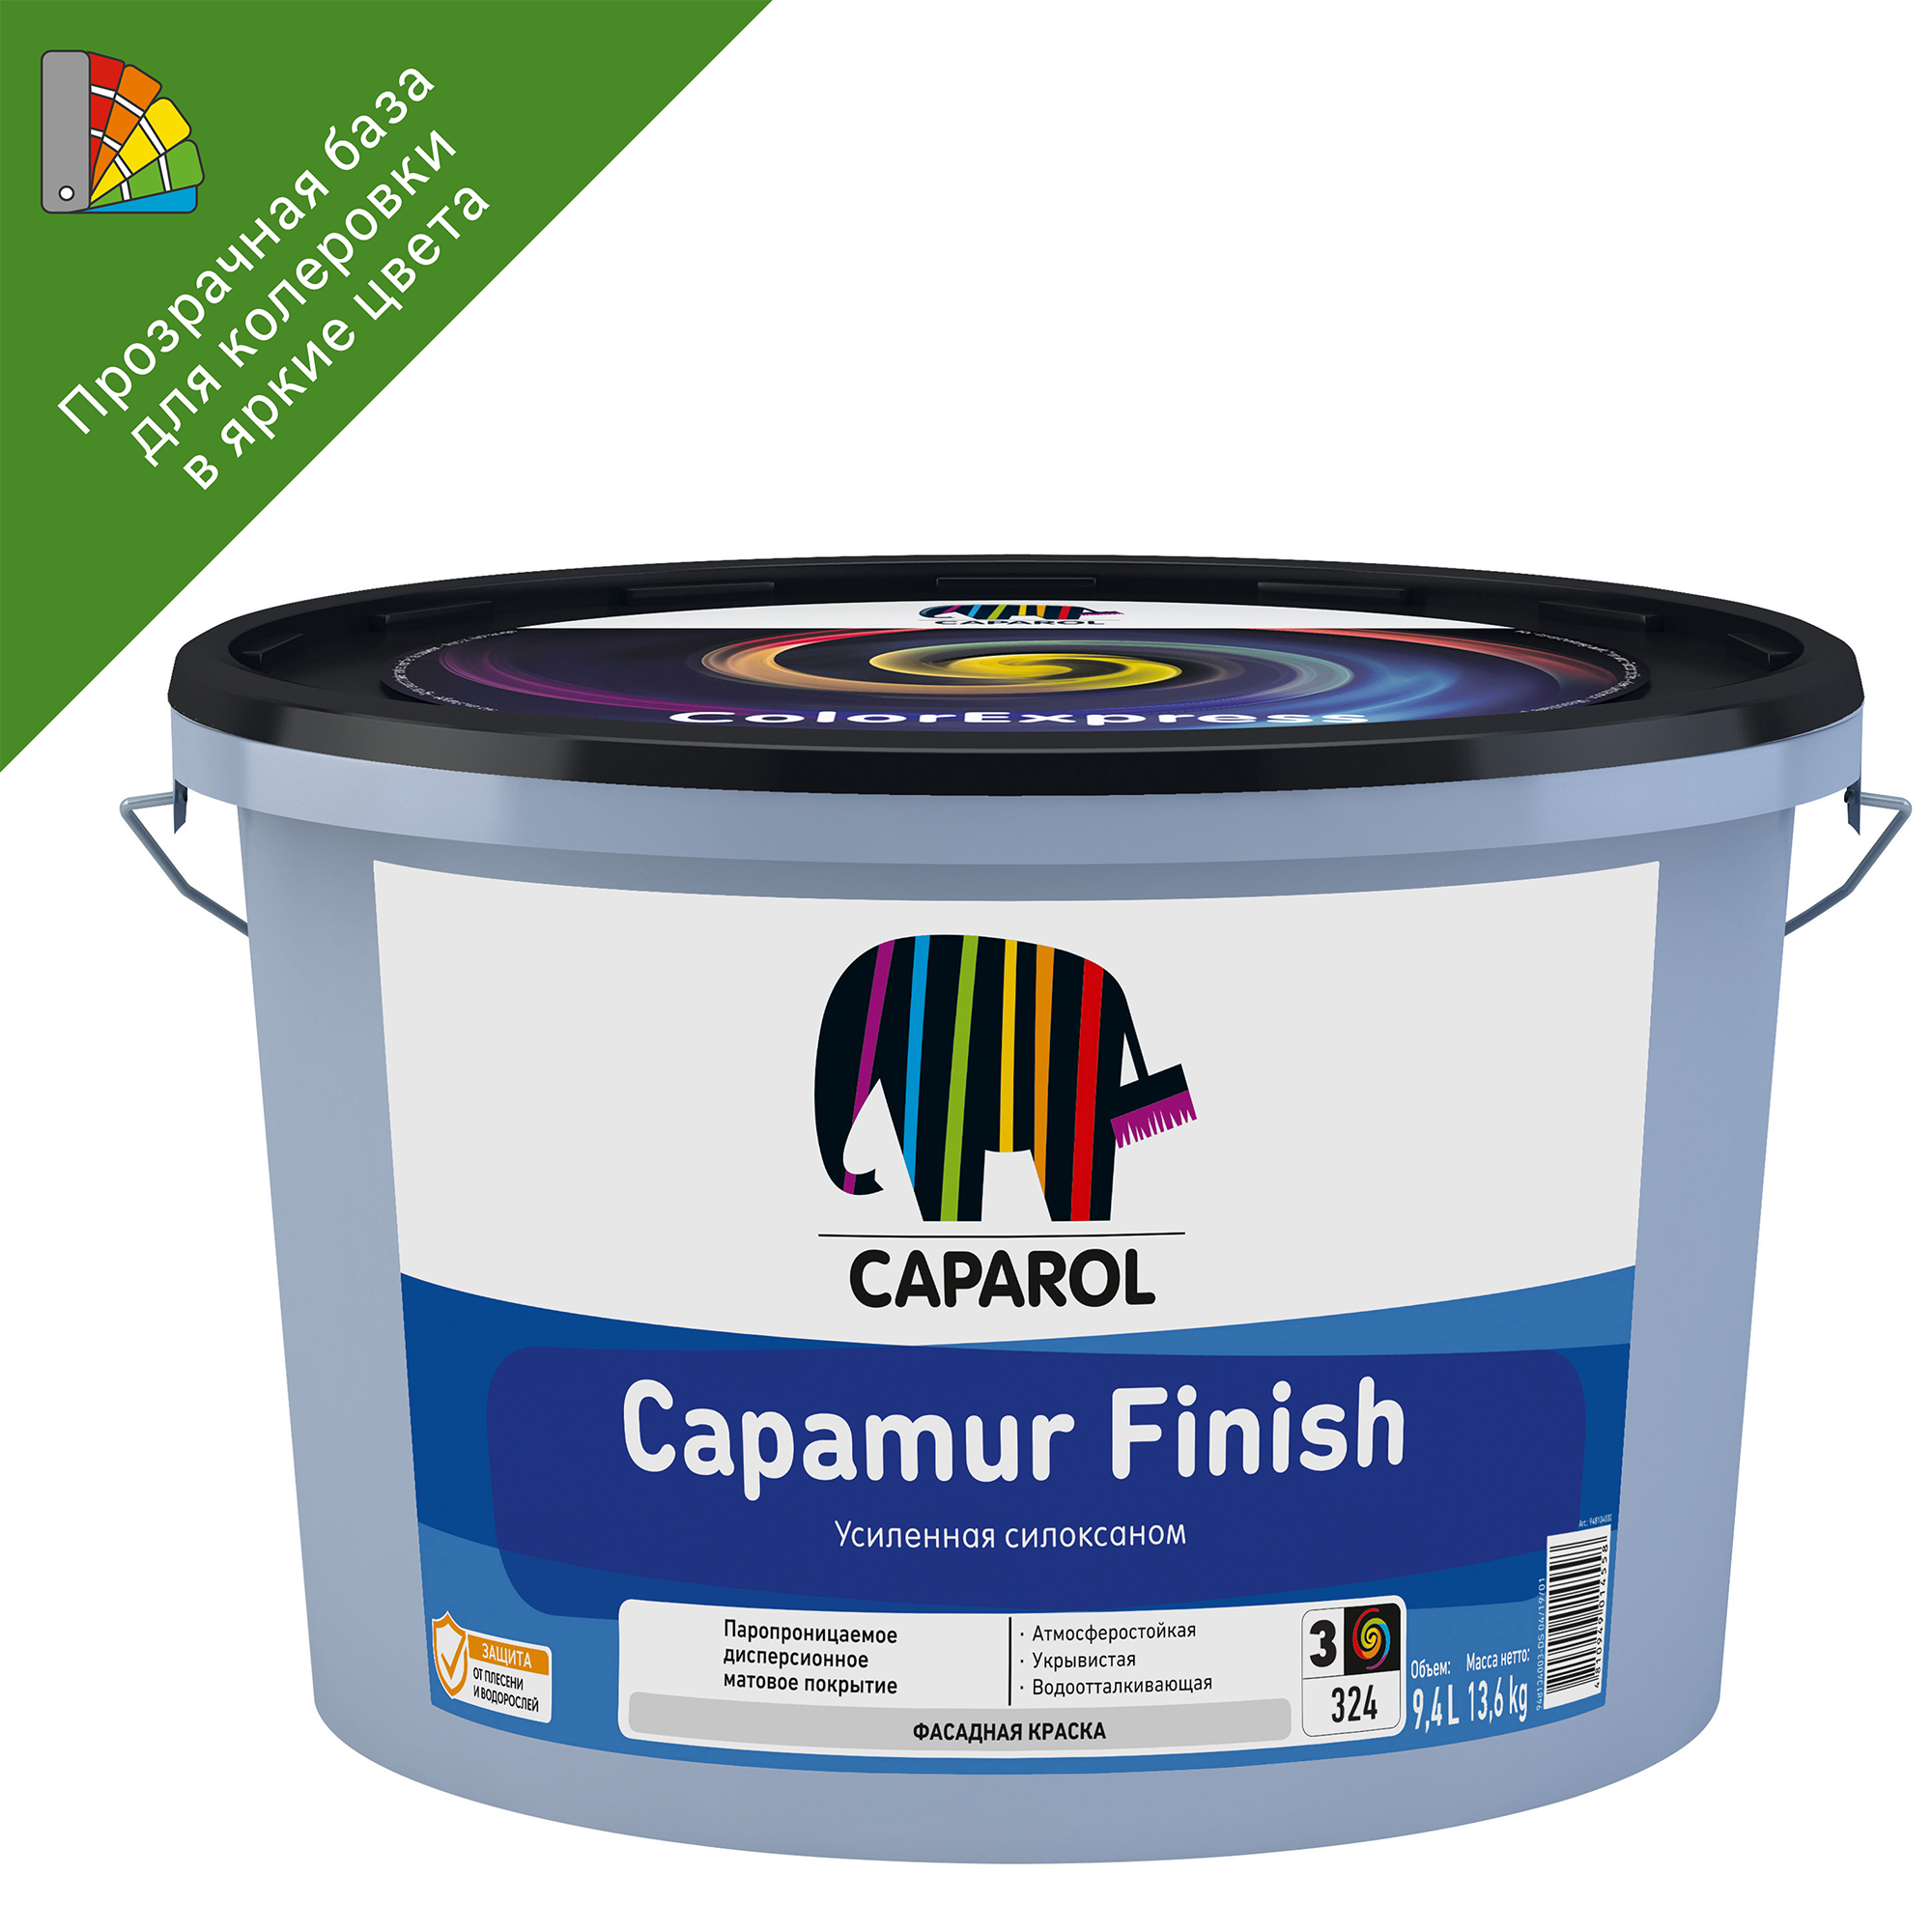 82216015 Краска для колеровки фасадная Capamur Finish с силоксаном прозрачная база 3 9.4 л STLM-0022149 CAPAROL